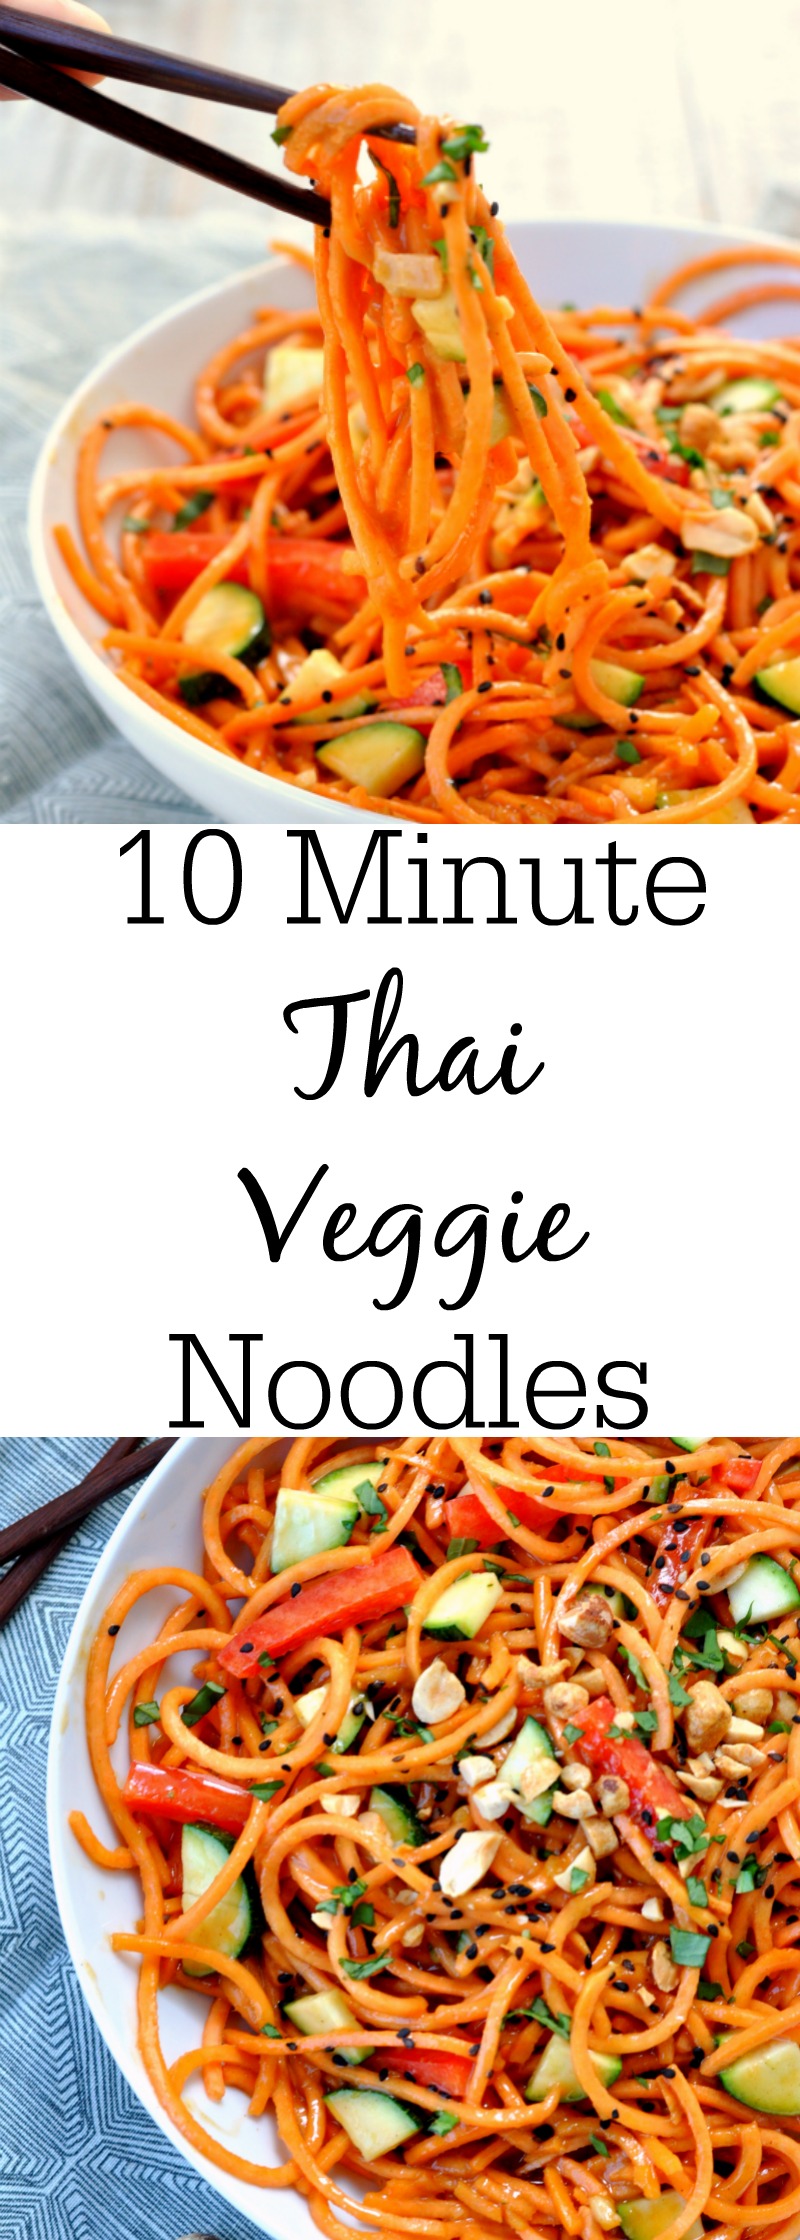 10 Minute Thai Veggie Noodles